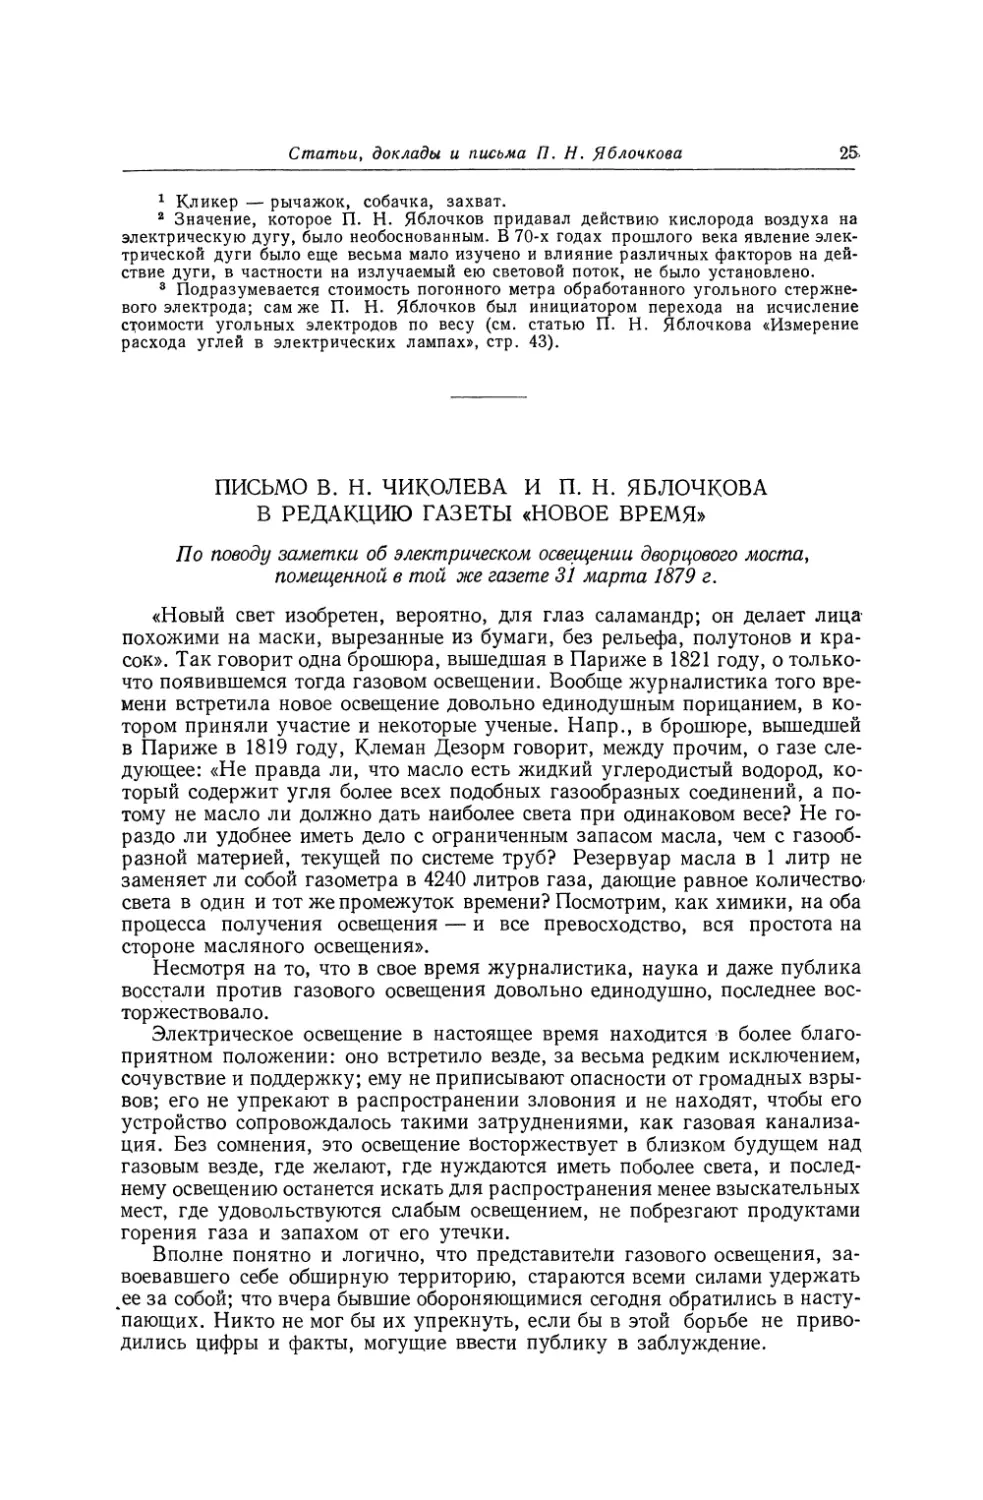 Письмо В. Н. Чиколева и П. Н. Яблочкова в редакцию газеты «Новое Время» по поводу заметки об электрическом освещении Дворцового моста, помещенной в той же газете 31 марта 1879 г